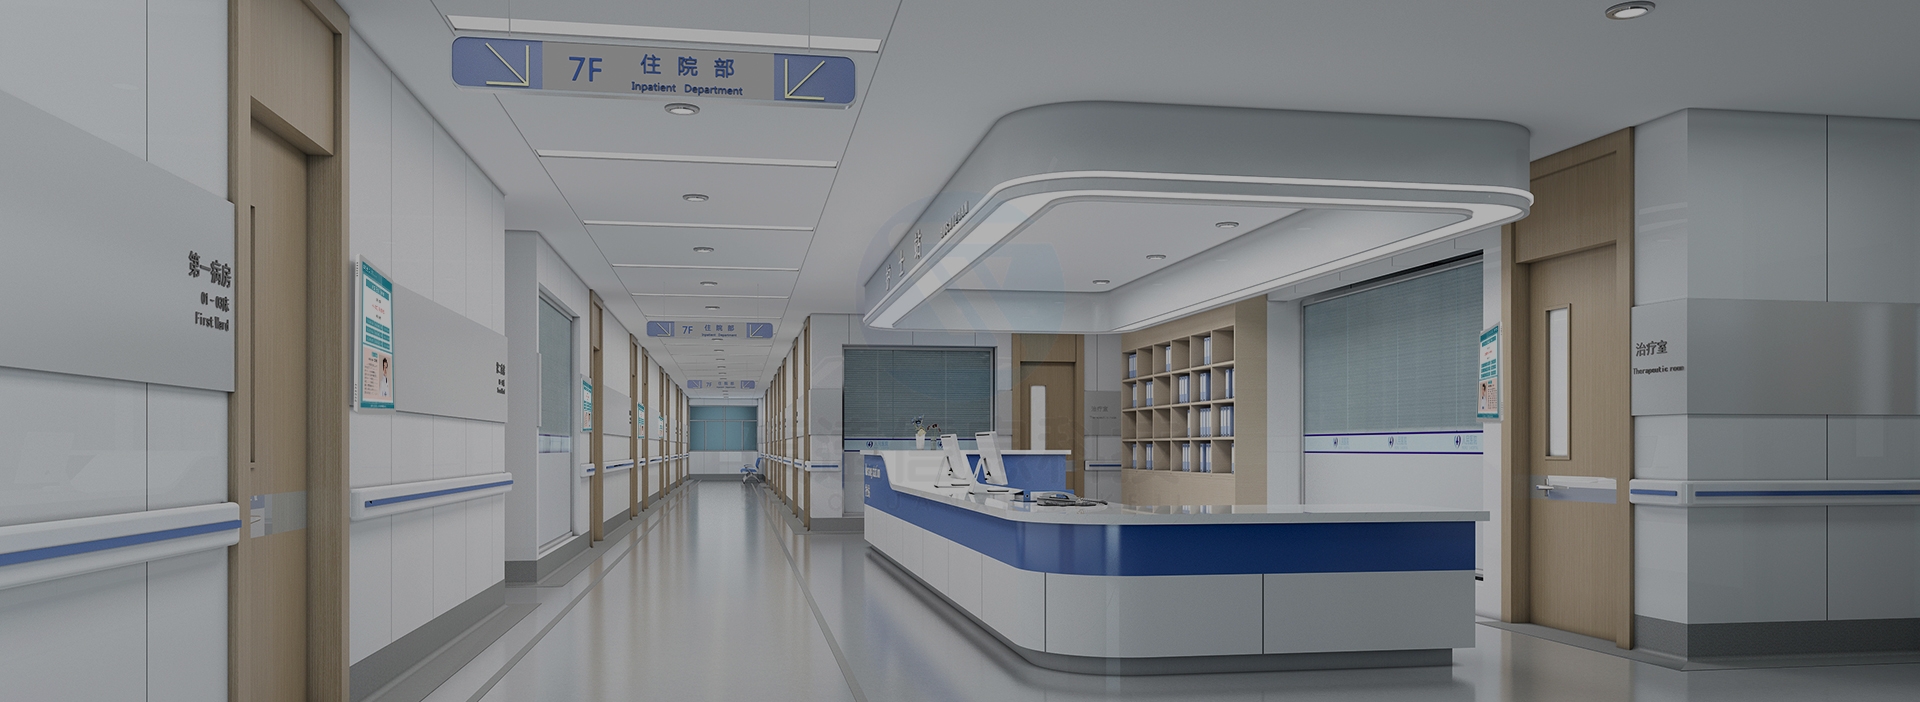 淮安市第一人民医院使用硕远智能银医通自助服务终端